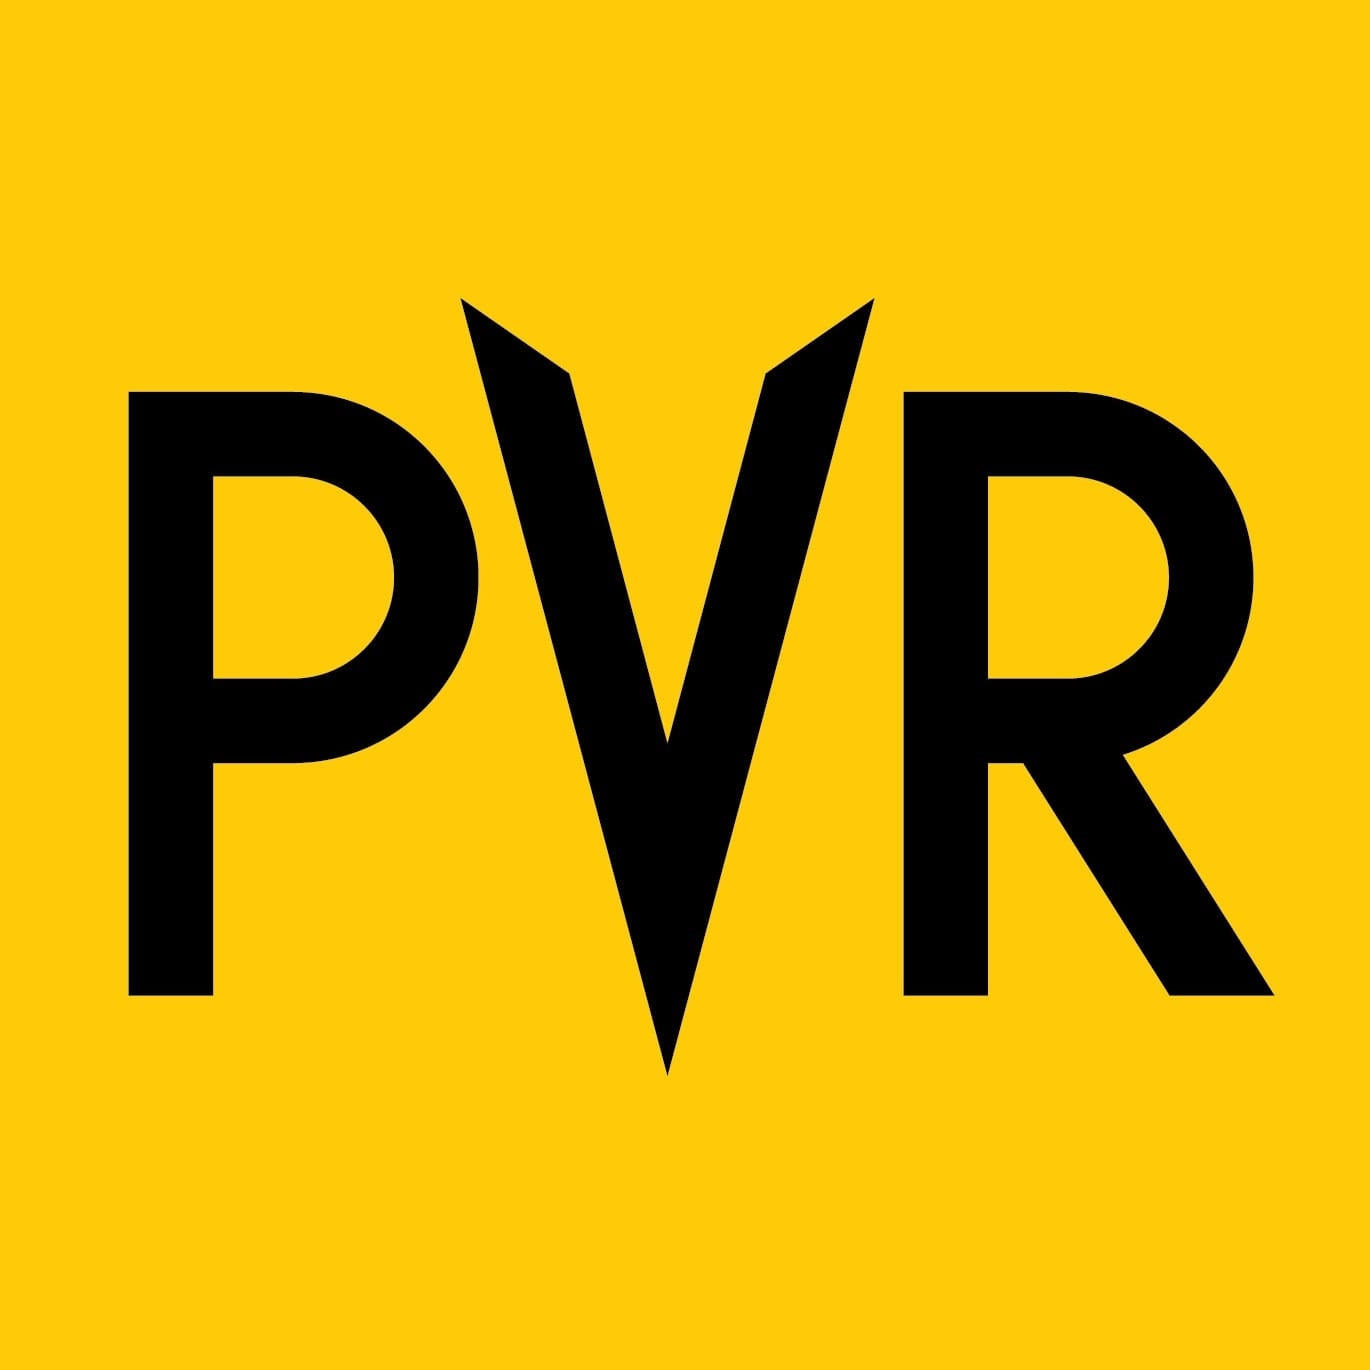 PVR Priya - Logo